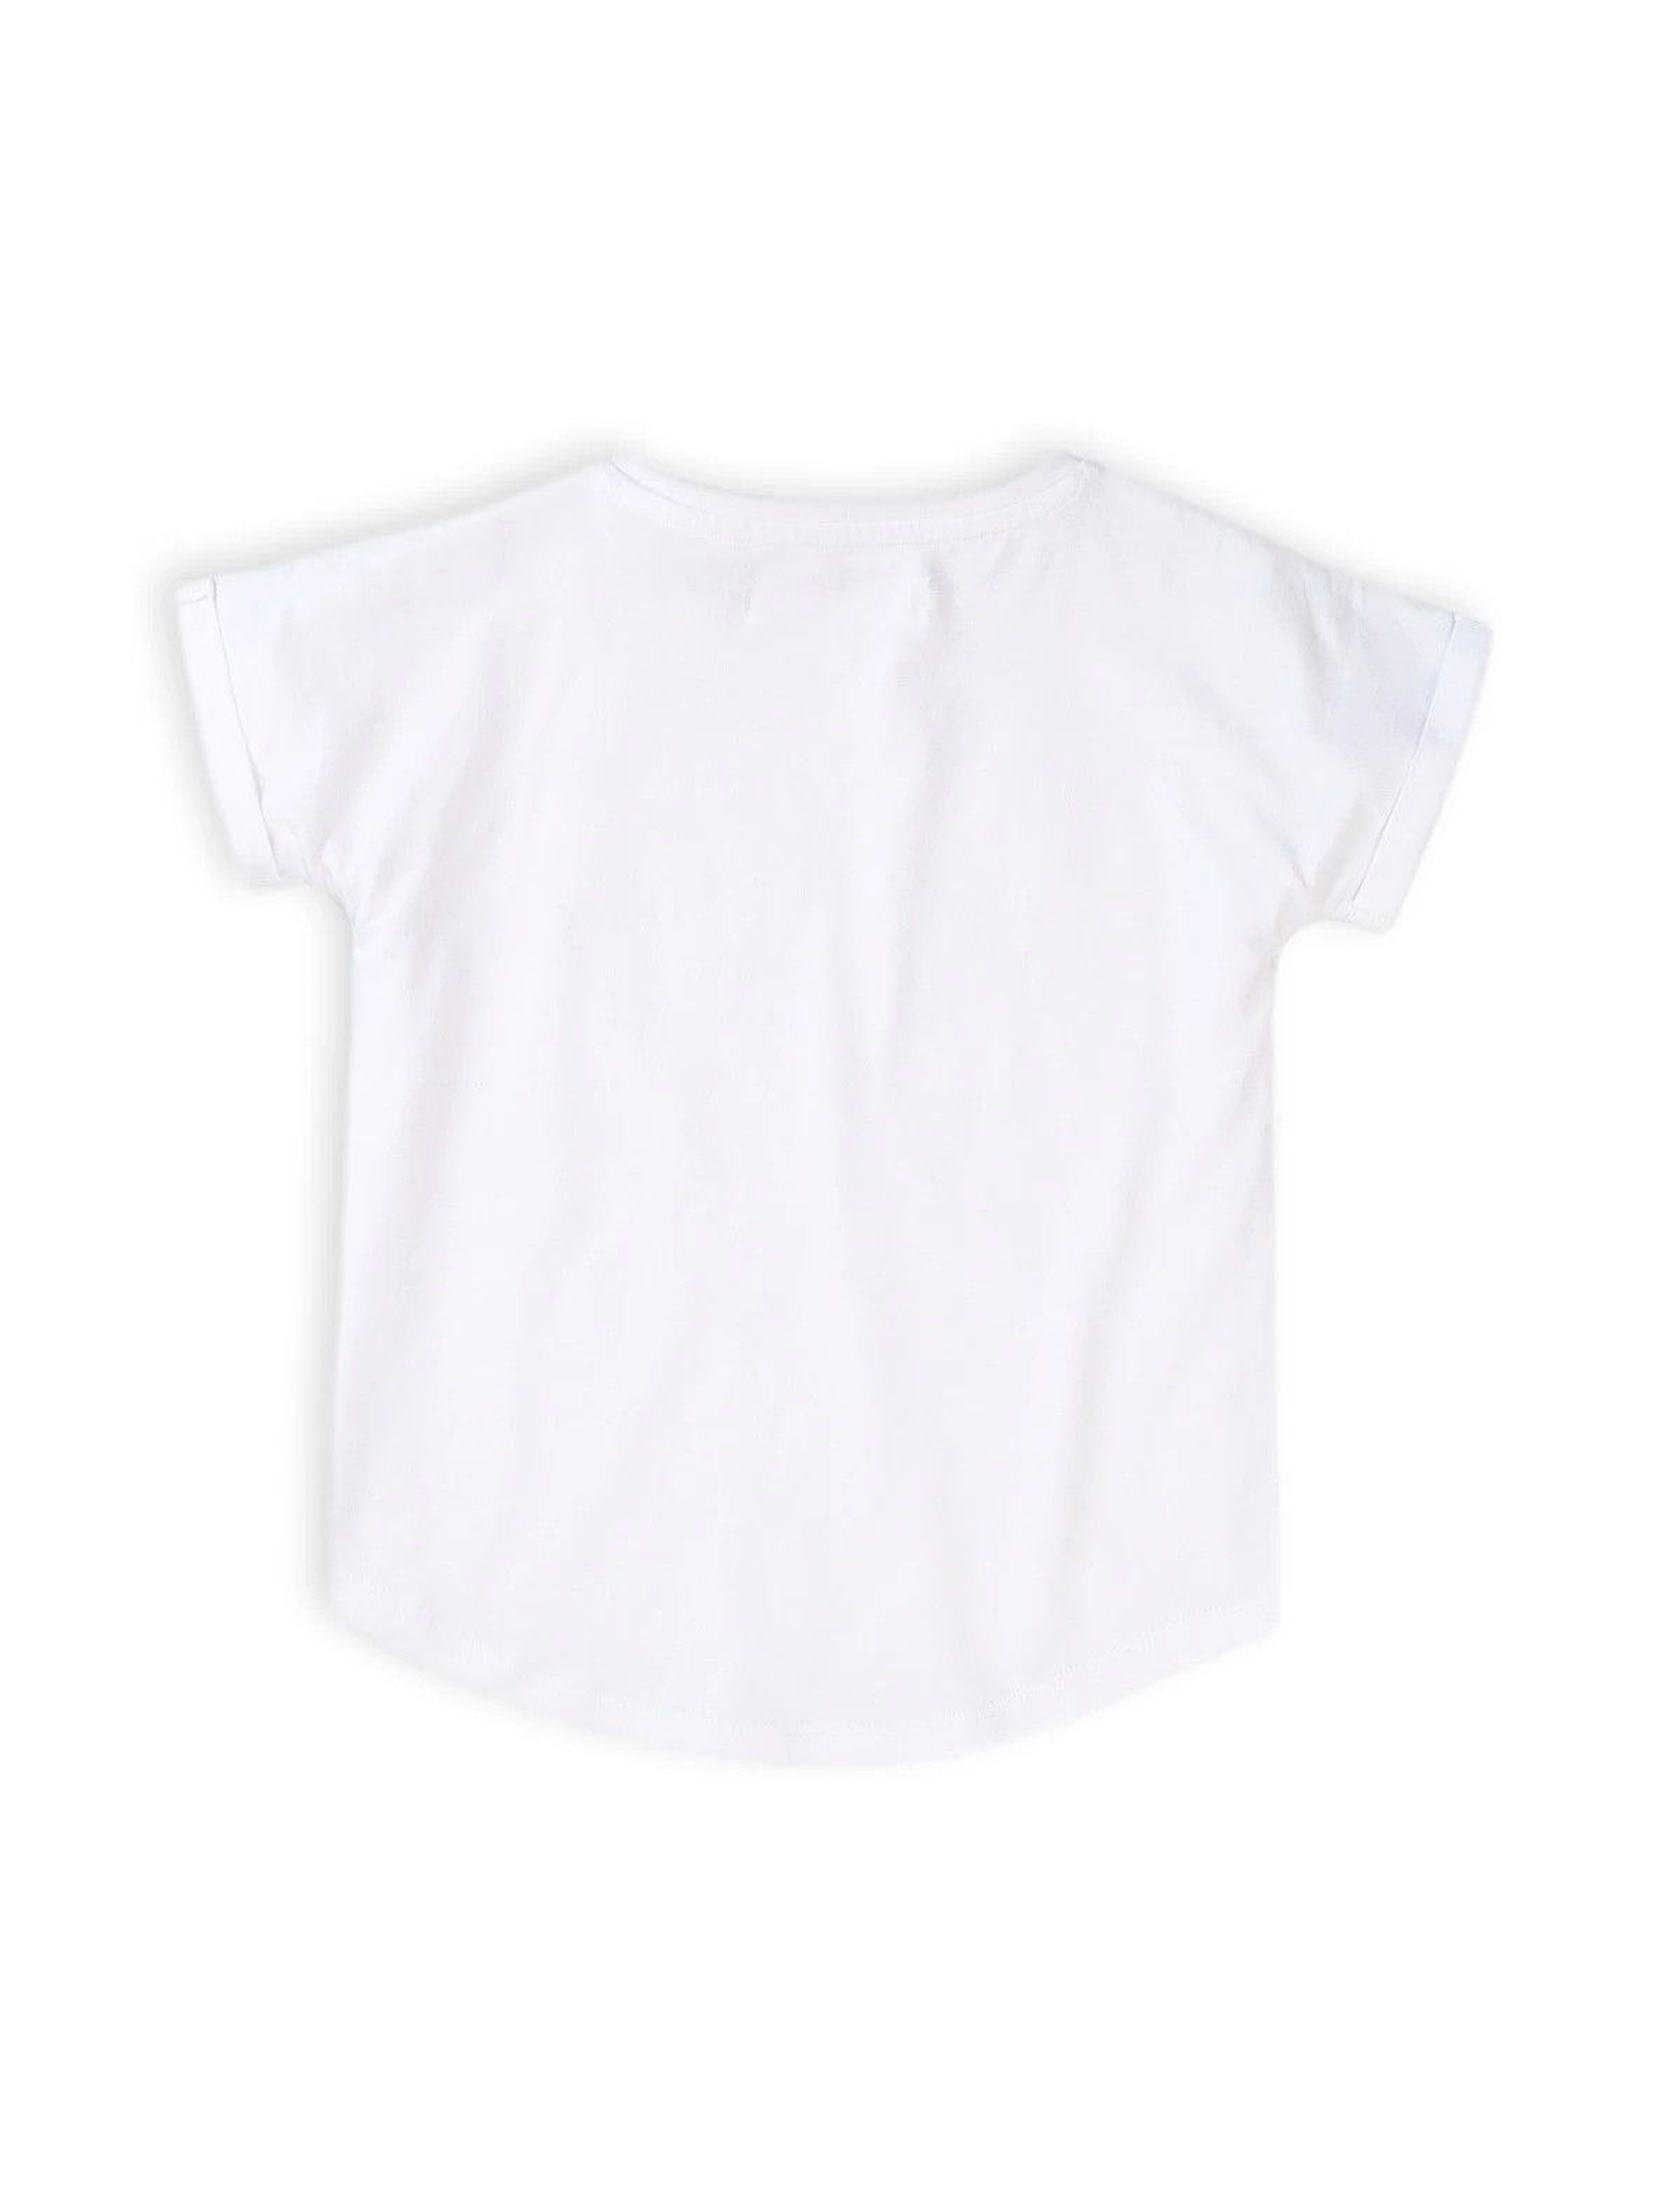 T-shirt dziewczęcy biały z jednorożcem